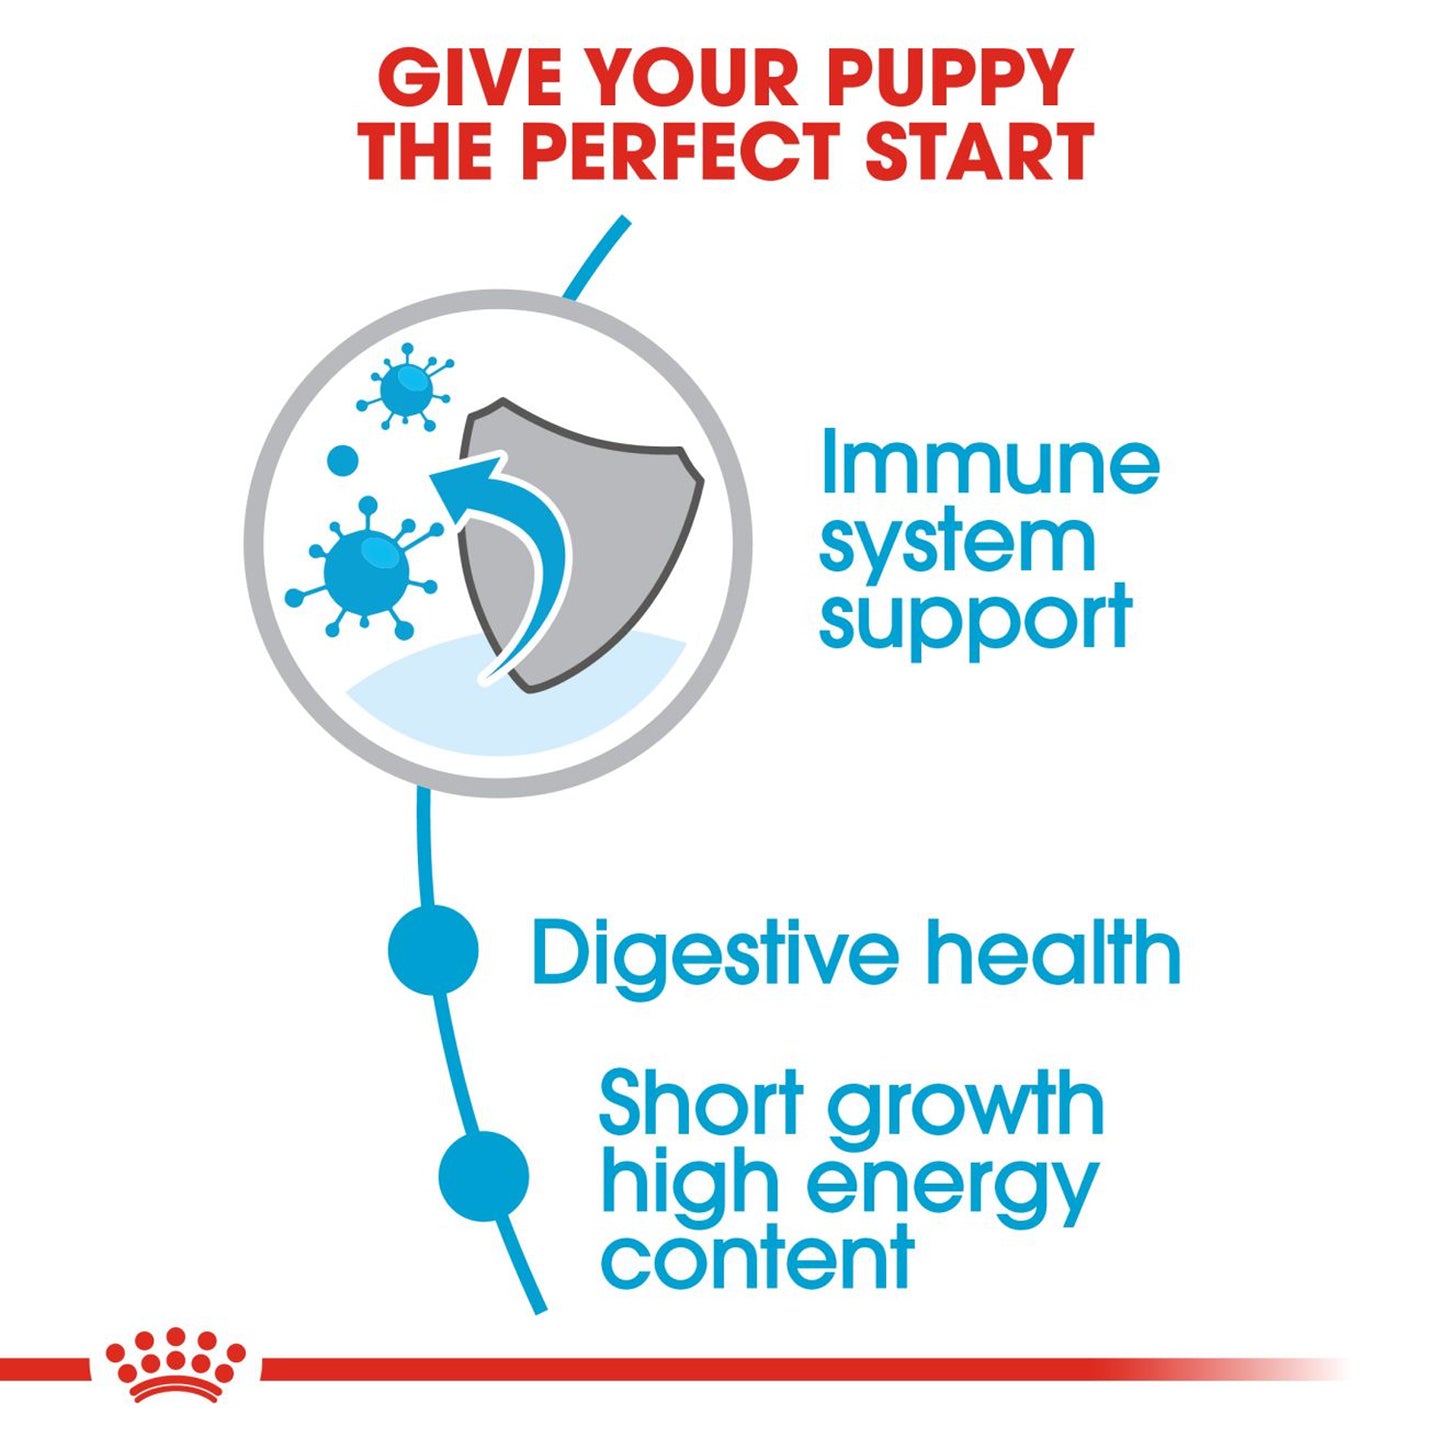 Royal Canin - Medium Puppy Dry Food